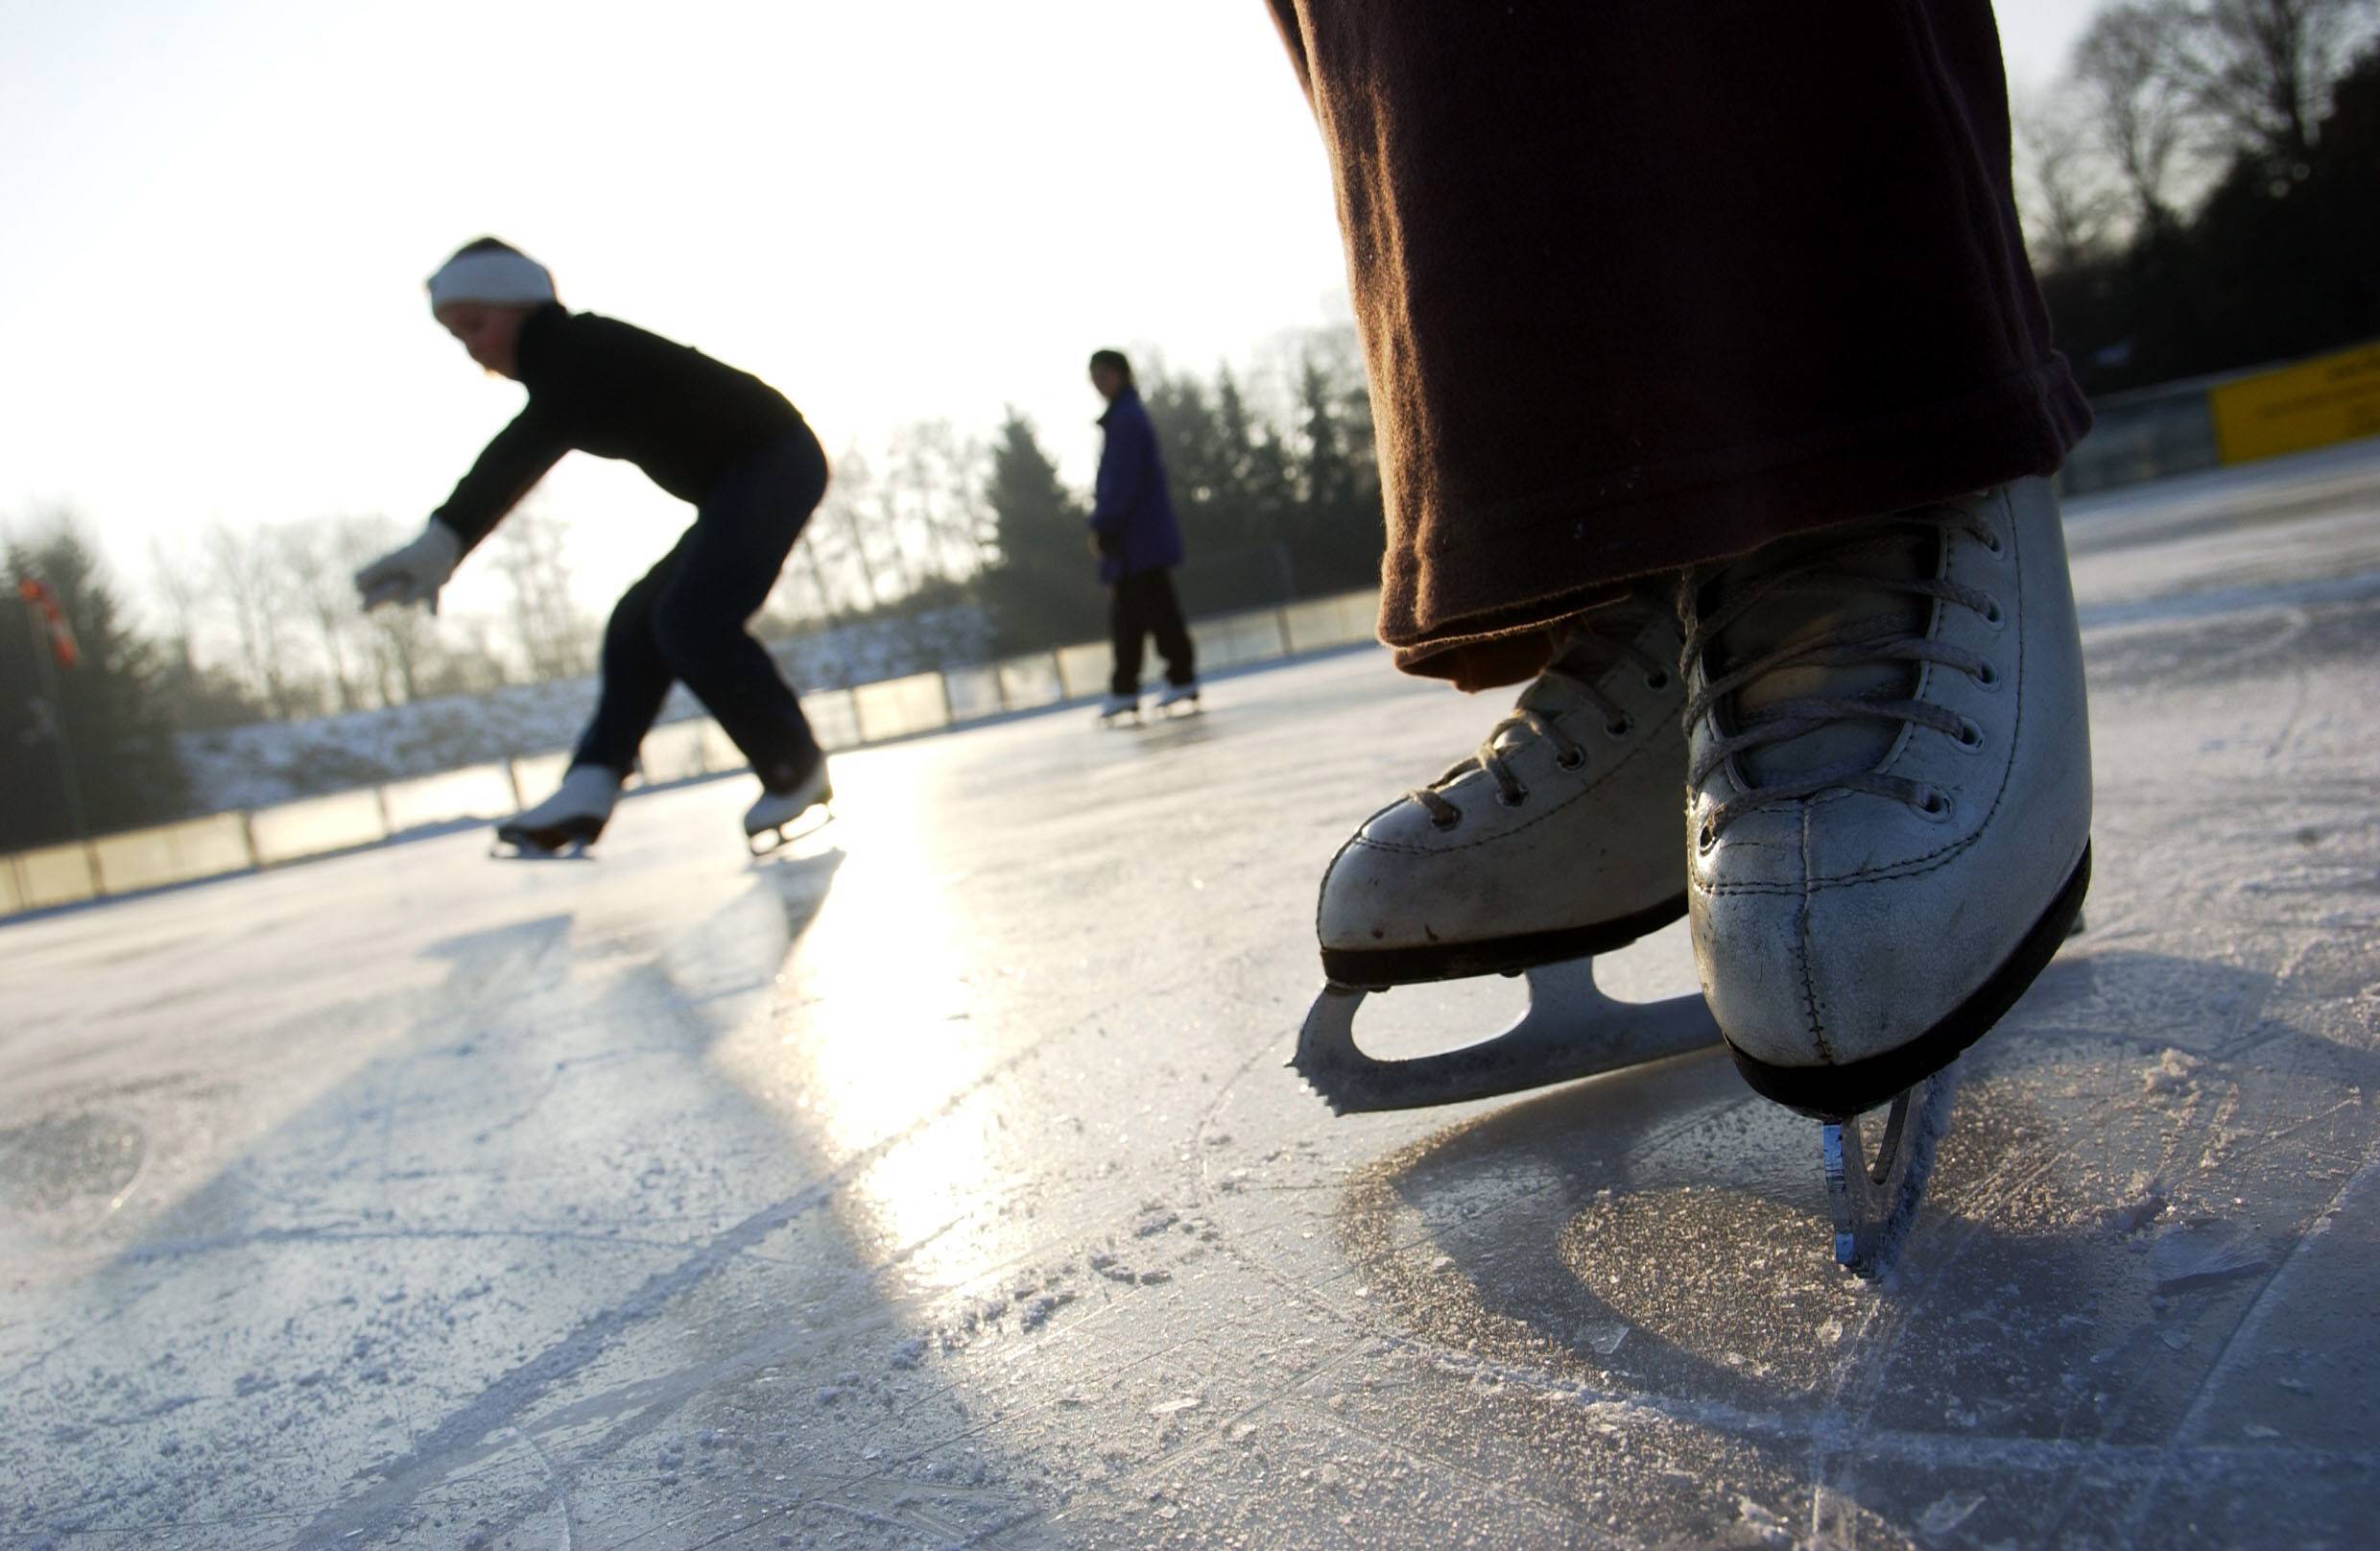 Wintersport Der Winter in Berlin bietet viele Möglichkeiten sich sportlich zu betätigen. Mehrere Eisbahnen bieten viel Platz, um an der kalten Winterluft übers Eis zu gleiten.